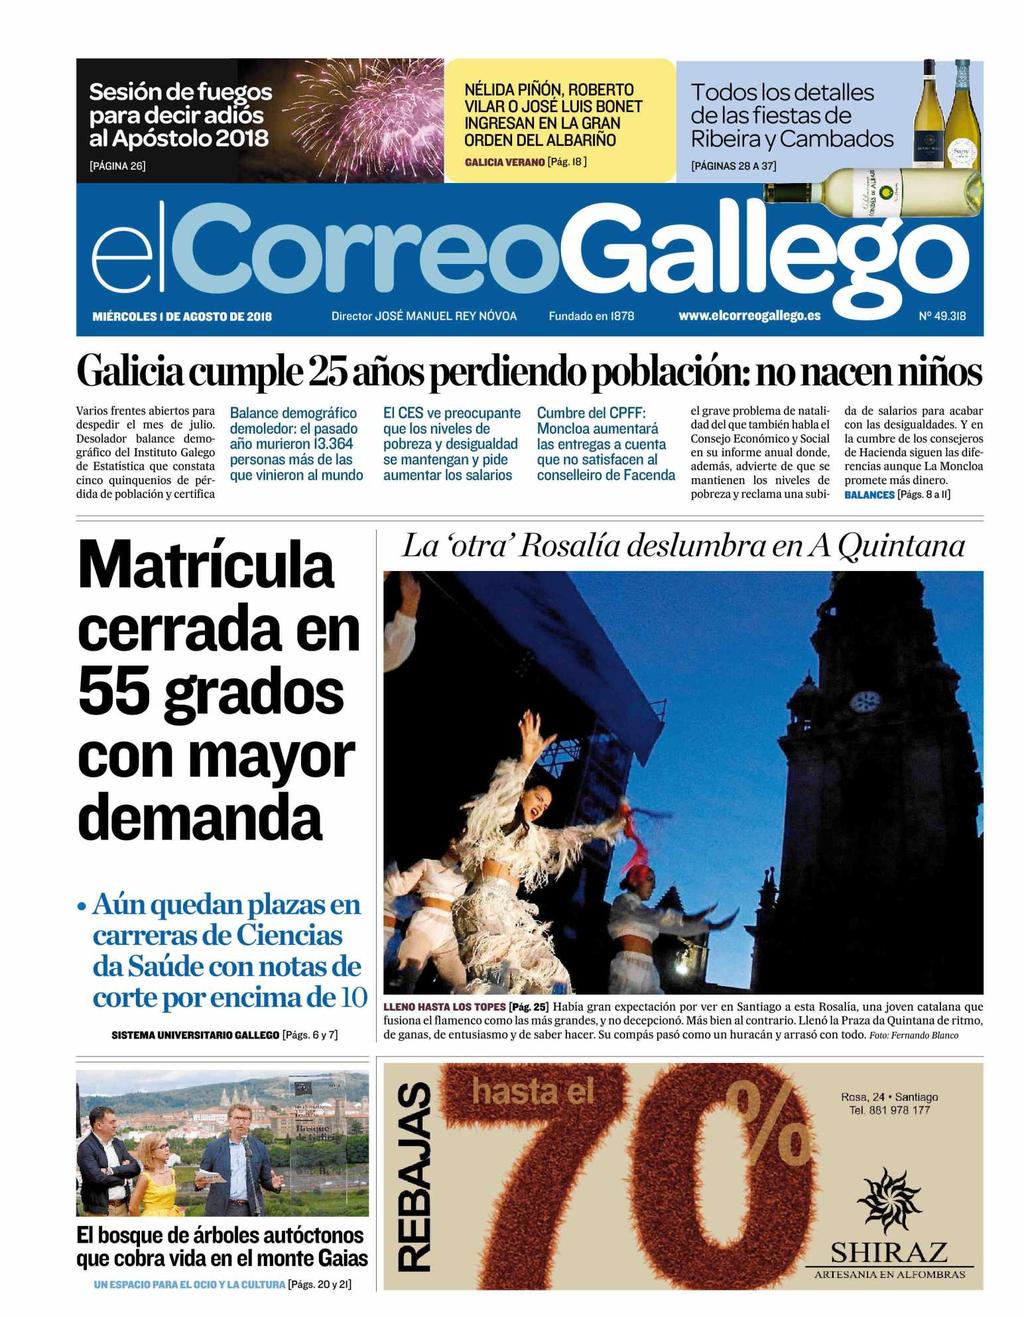 El Correo Gallego Galicia 27.472 Ejemplares 22.735 Ejemplares Sección: PORTADA Valor: 5.